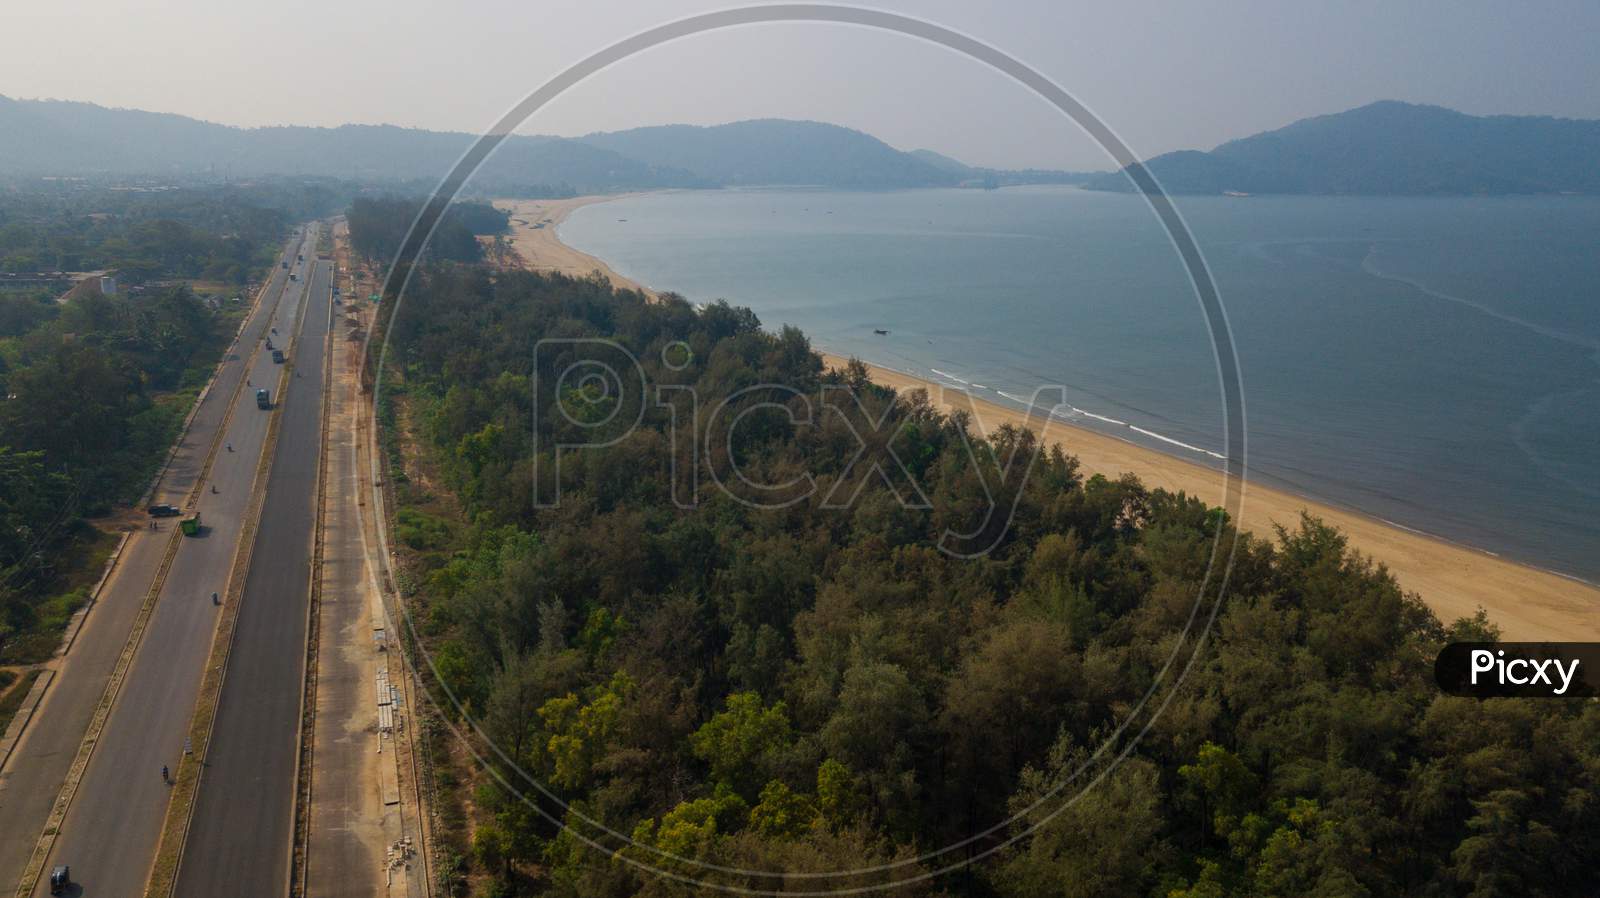 Aerial View of Highway Road besides Sea Coast In Murudehswar